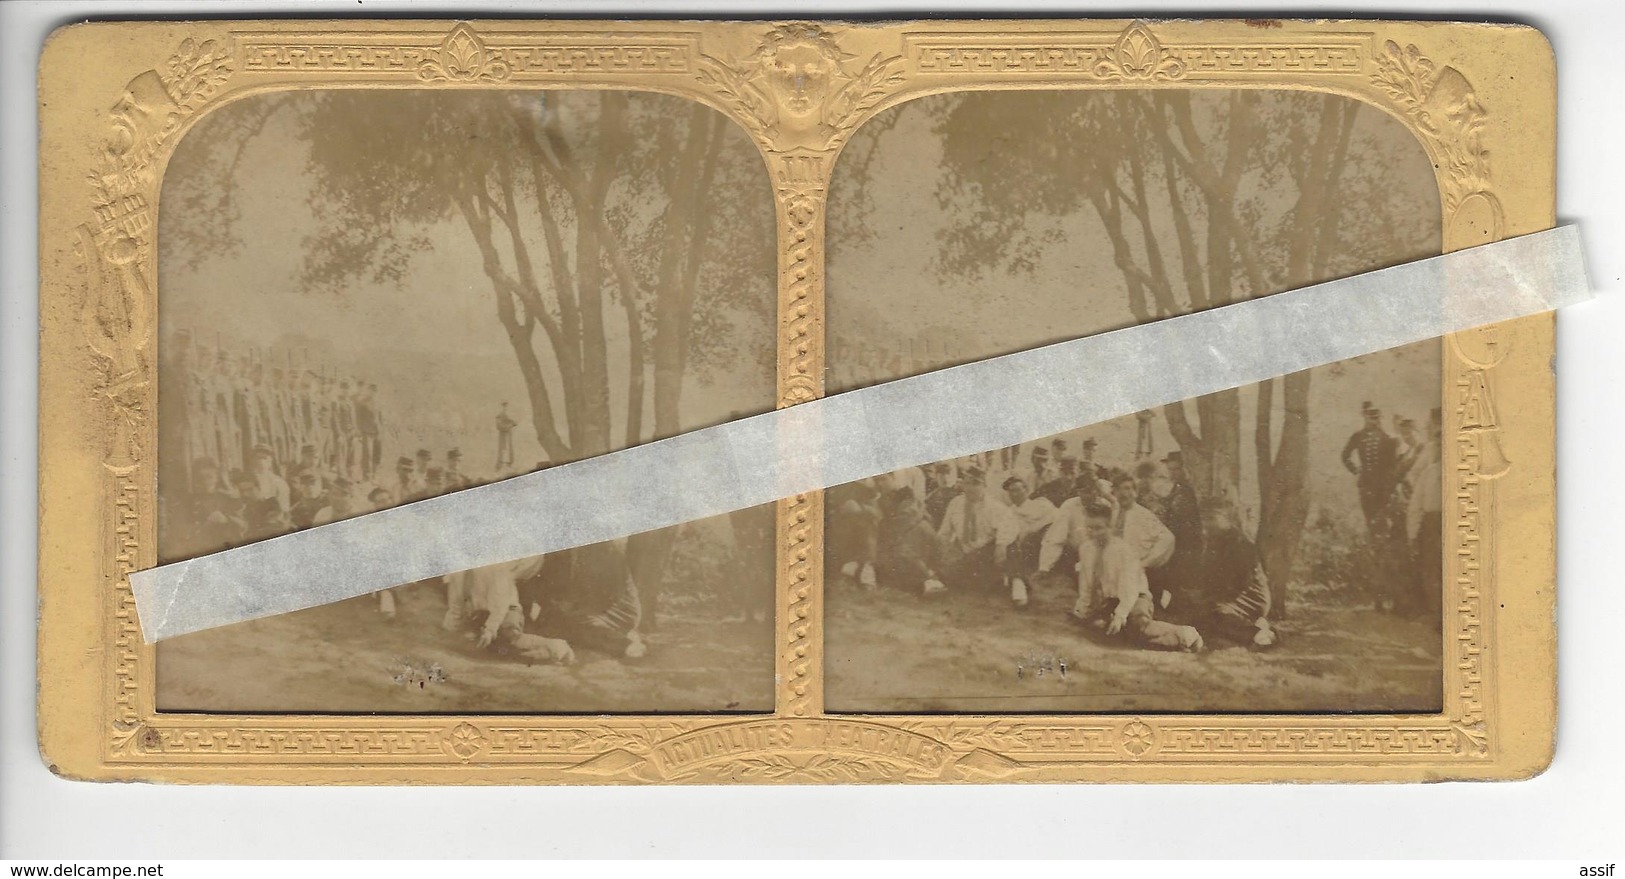 PHOTO STEREO Circa 1870 VILLENEUVE L'ETANG MARNES LA COQUETTE MILITARIA /FREE SHIPPING REGISTERED - Stereoscopic